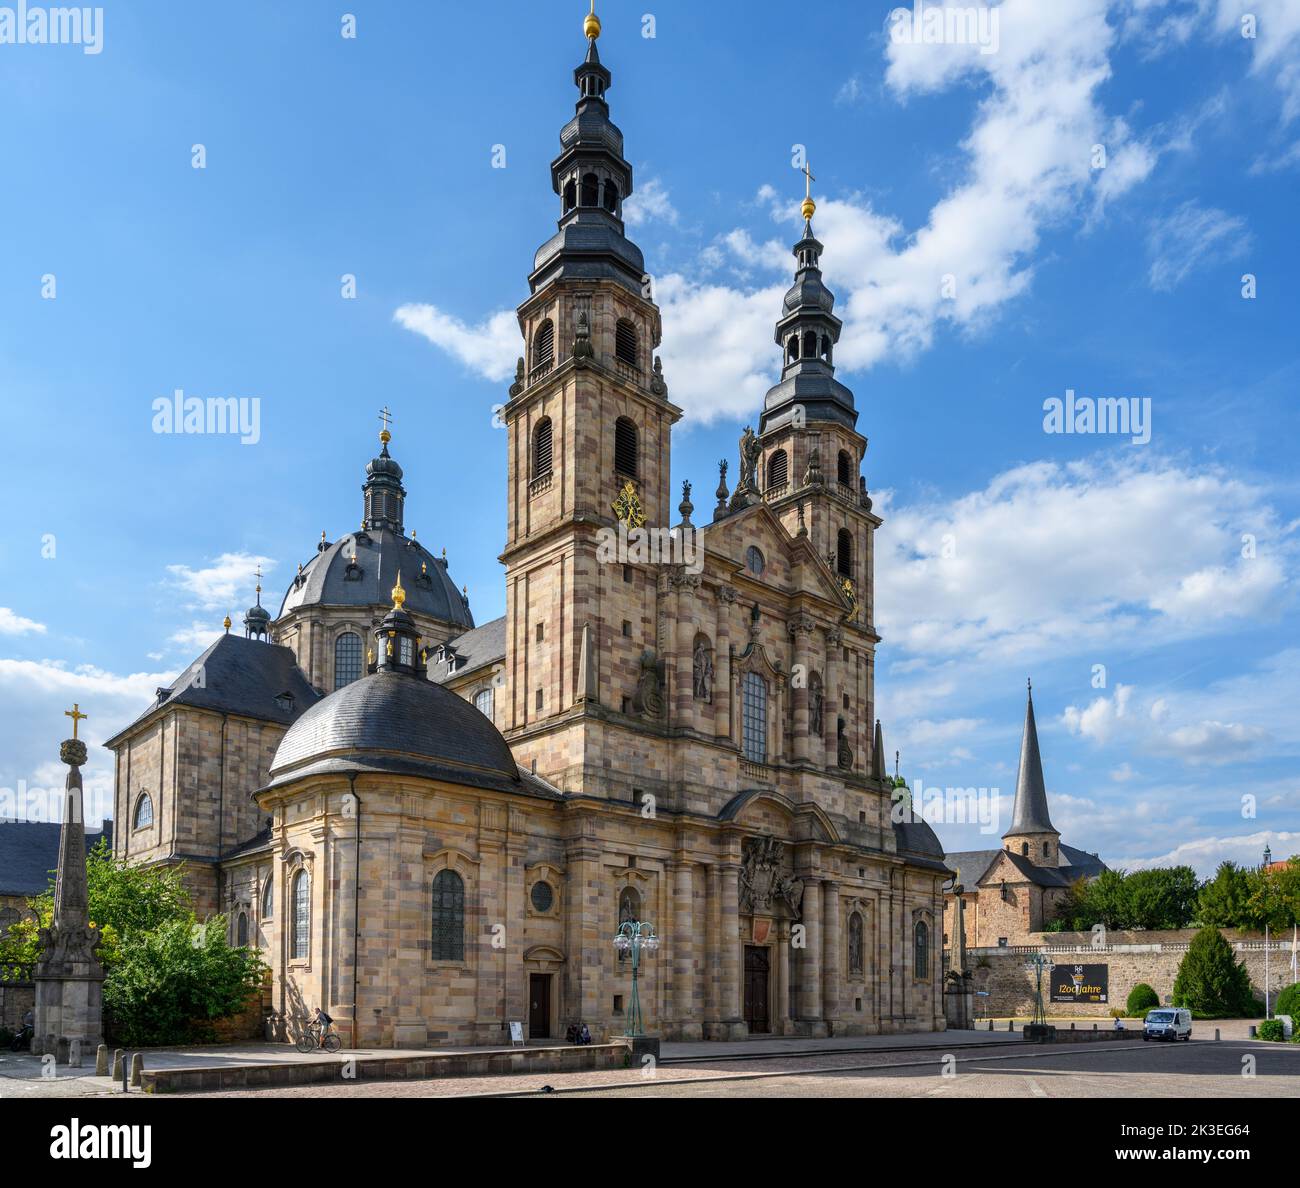 Dom zu Fulda (Cathédrale de Fulda) avec Michaelskirche derrière, Vieille ville (Altstadt), Fulda, Allemagne Banque D'Images